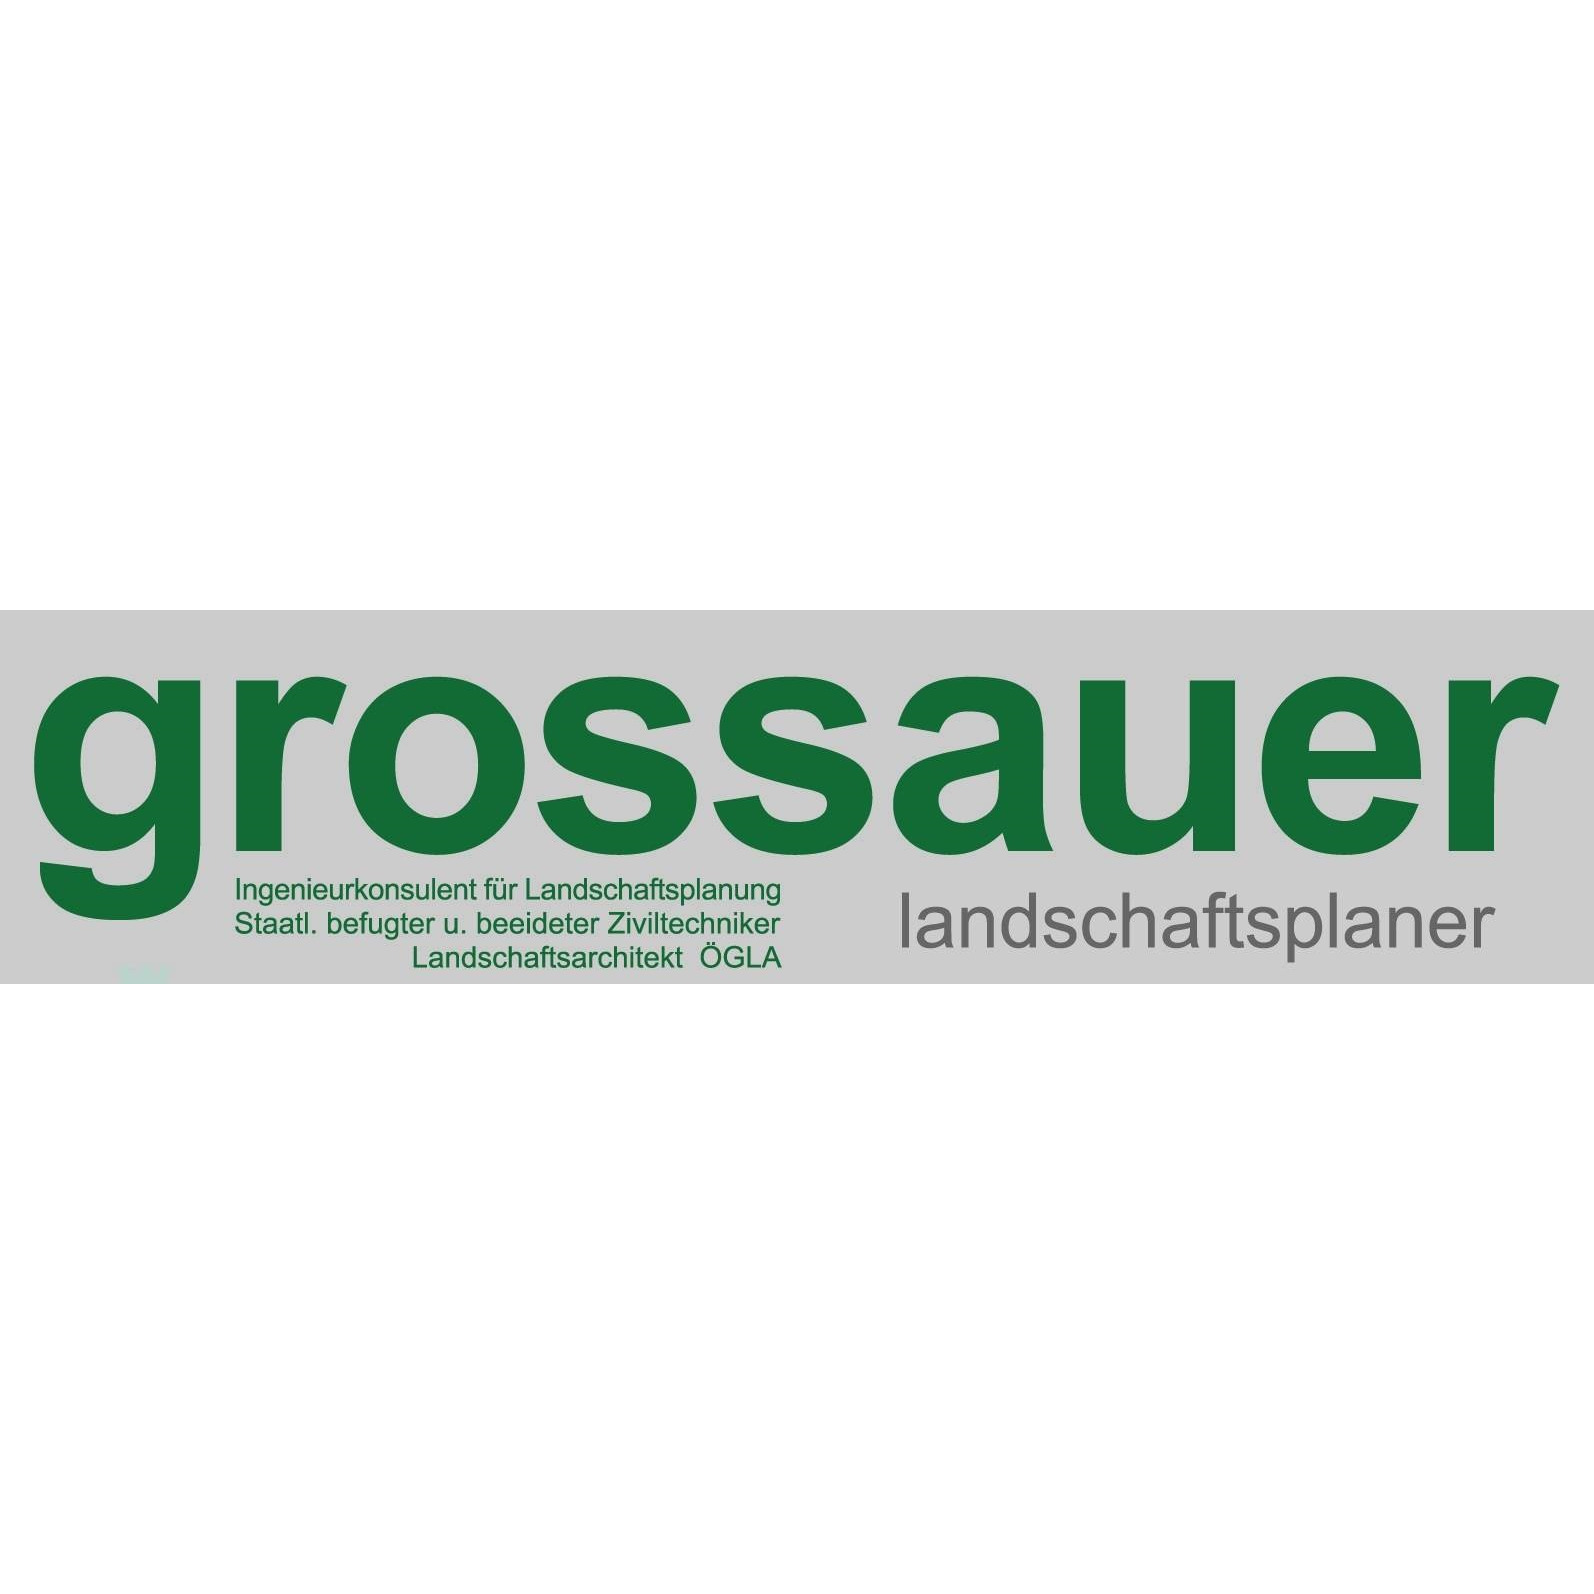 Ingenieurkonsulent für Landschaftsplanung und -pflege Dipl-Ing. Franz Grossauer